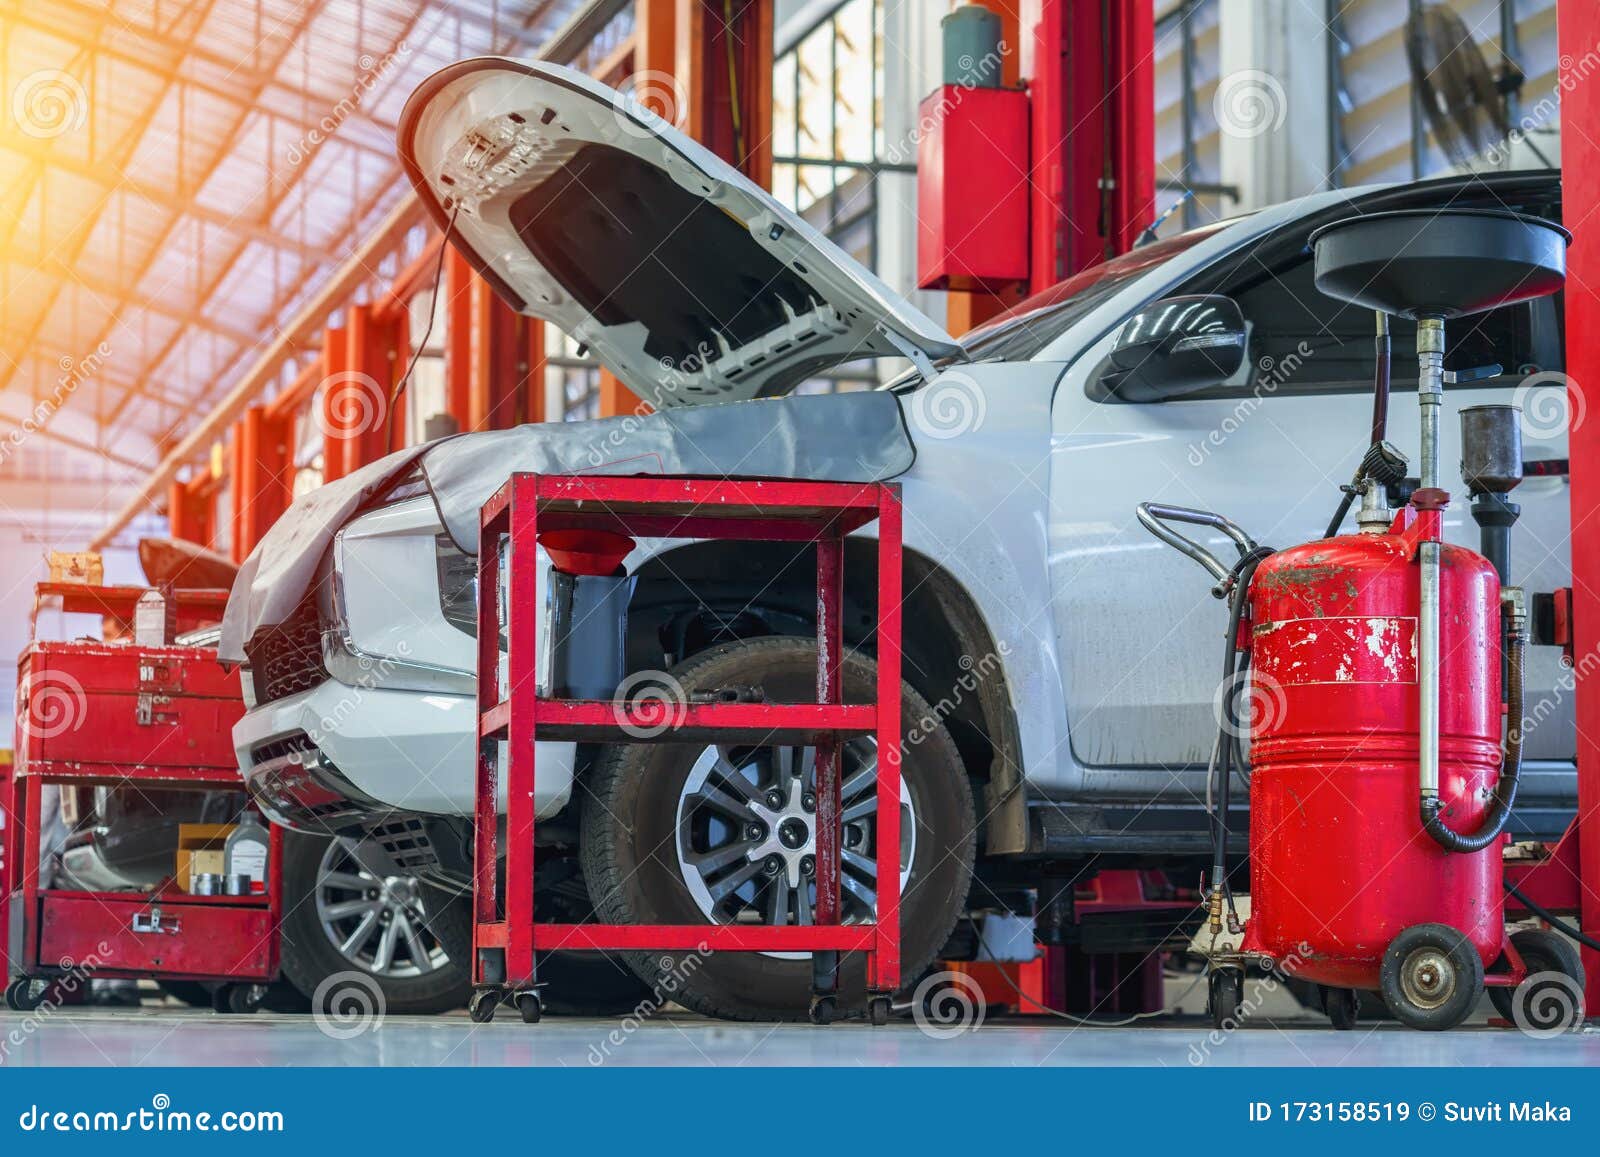 Car Repair In Garage Service Station Repair Stock Image Image of